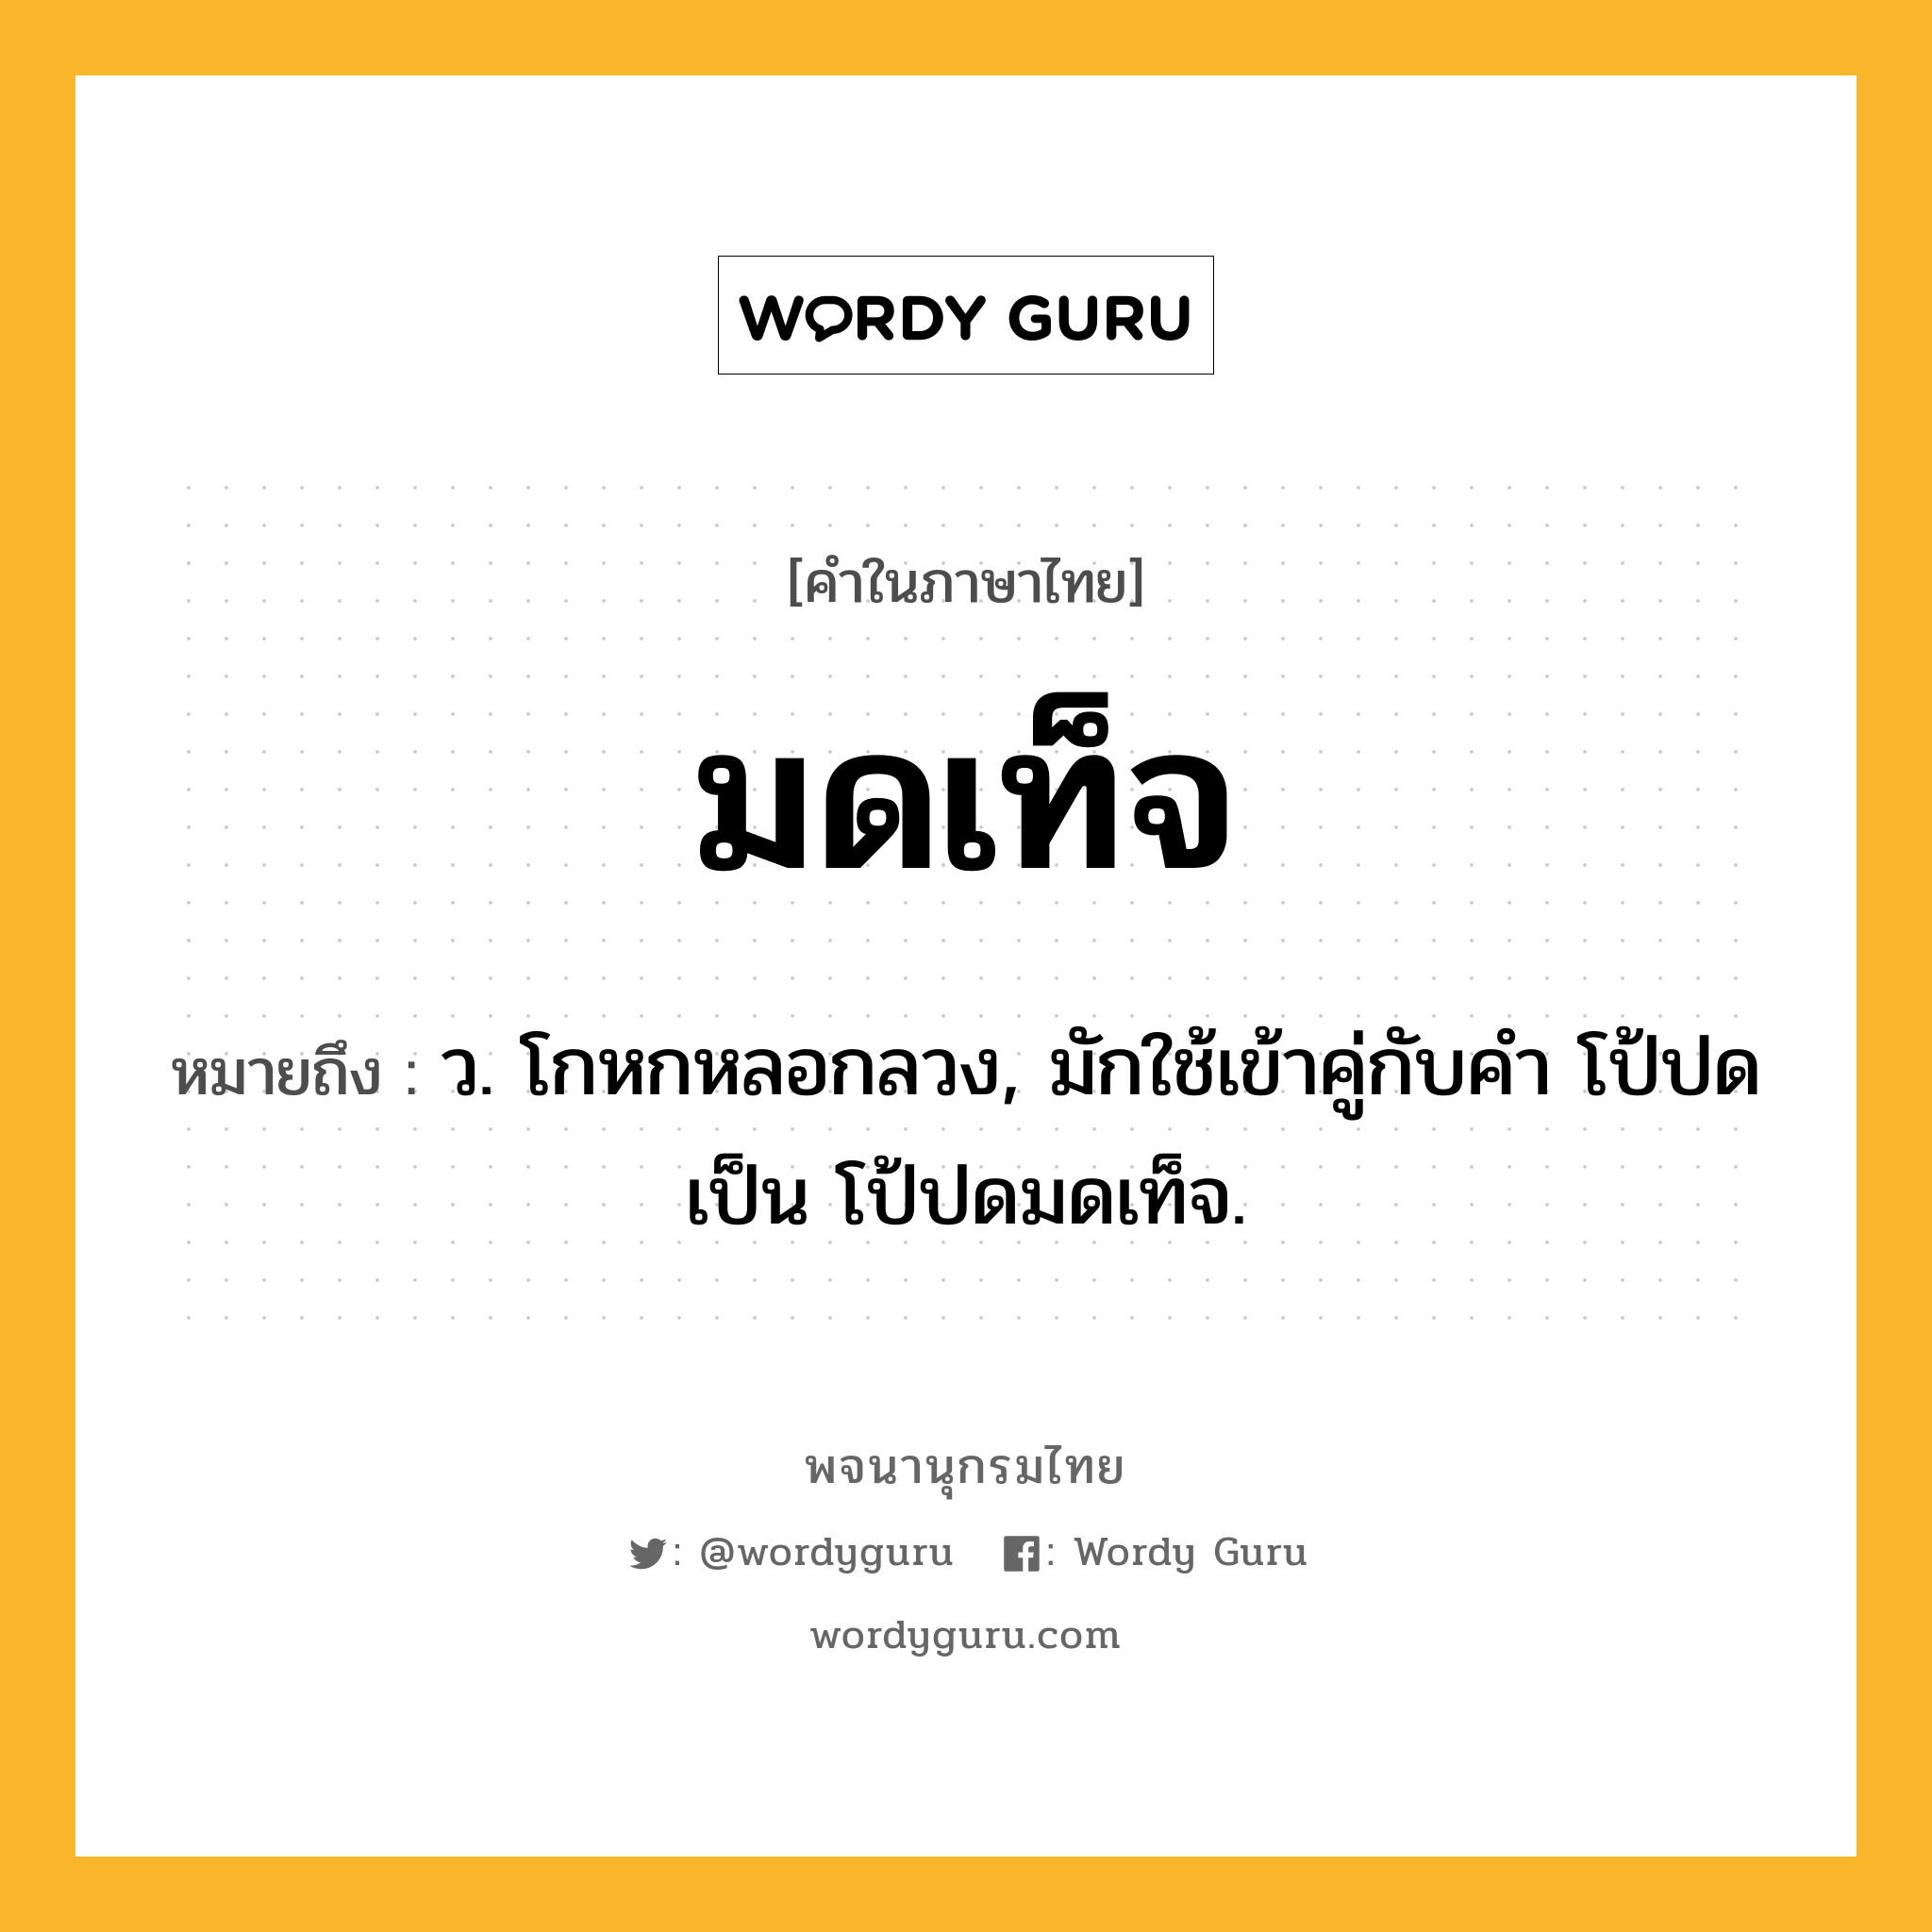 มดเท็จ ความหมาย หมายถึงอะไร?, คำในภาษาไทย มดเท็จ หมายถึง ว. โกหกหลอกลวง, มักใช้เข้าคู่กับคำ โป้ปด เป็น โป้ปดมดเท็จ.